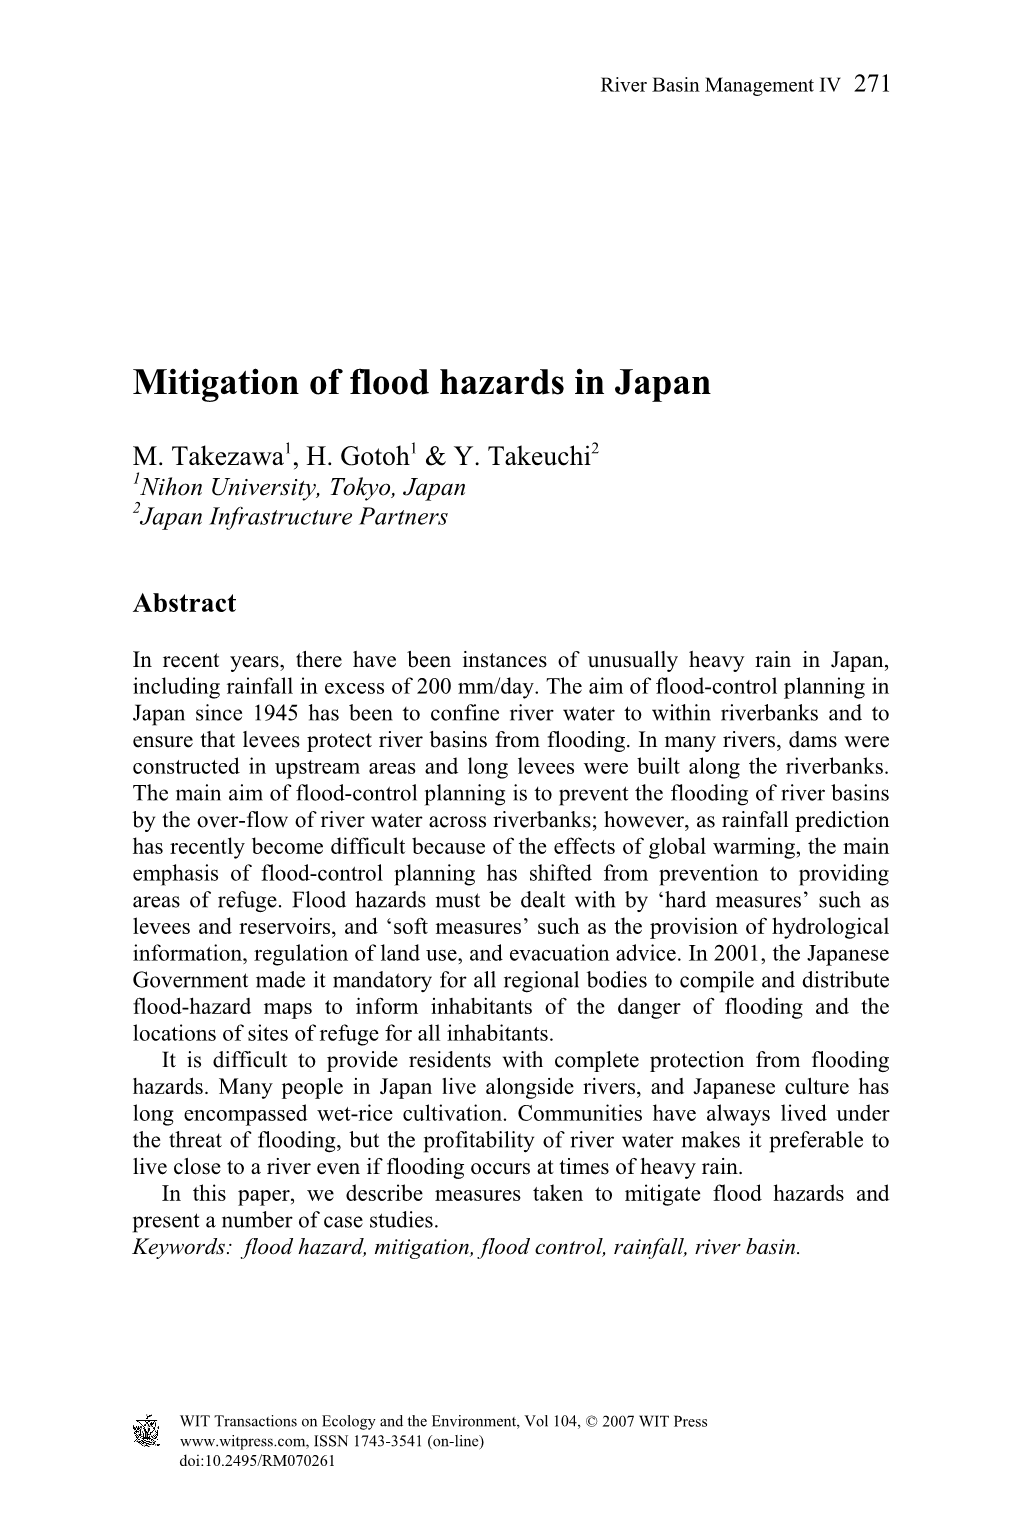 Mitigation of Flood Hazards in Japan